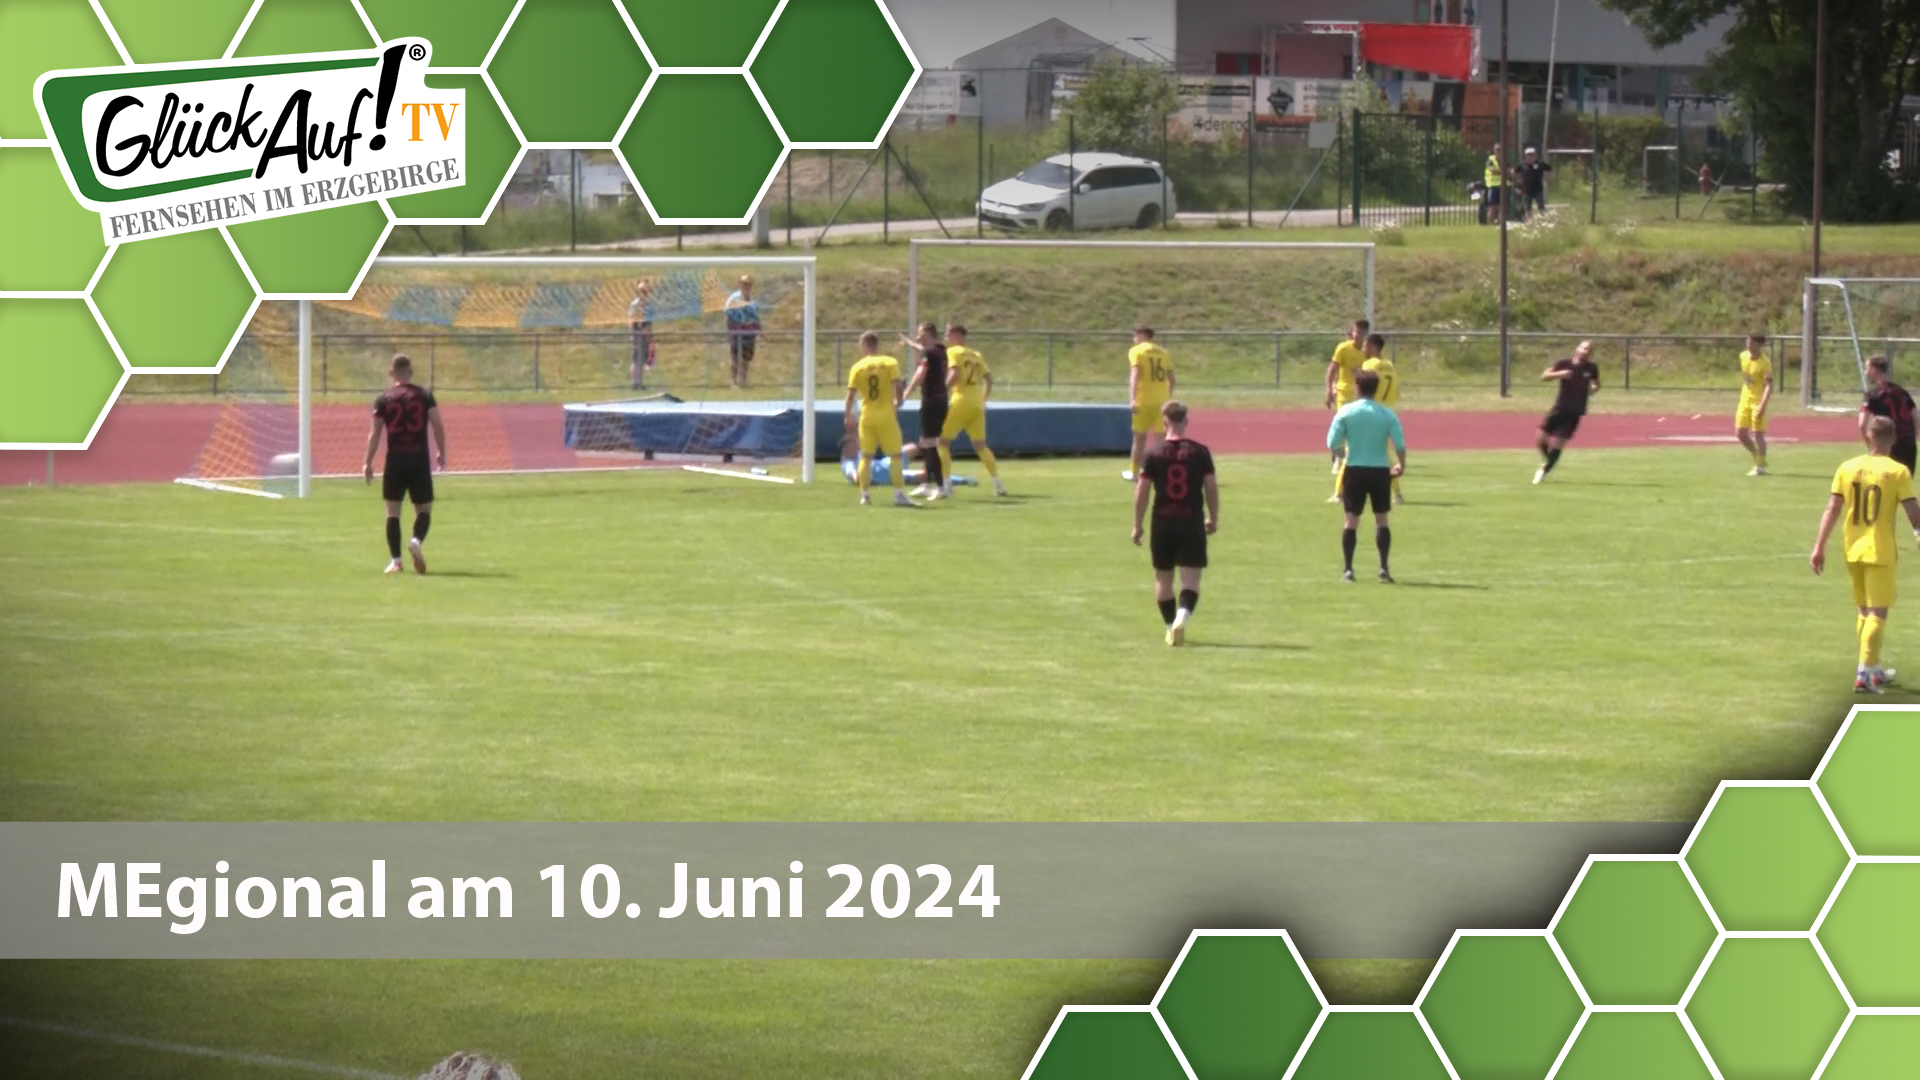 MEgional am 10. Juni 2024 mit dem letzten Spieltag in der Oberliga